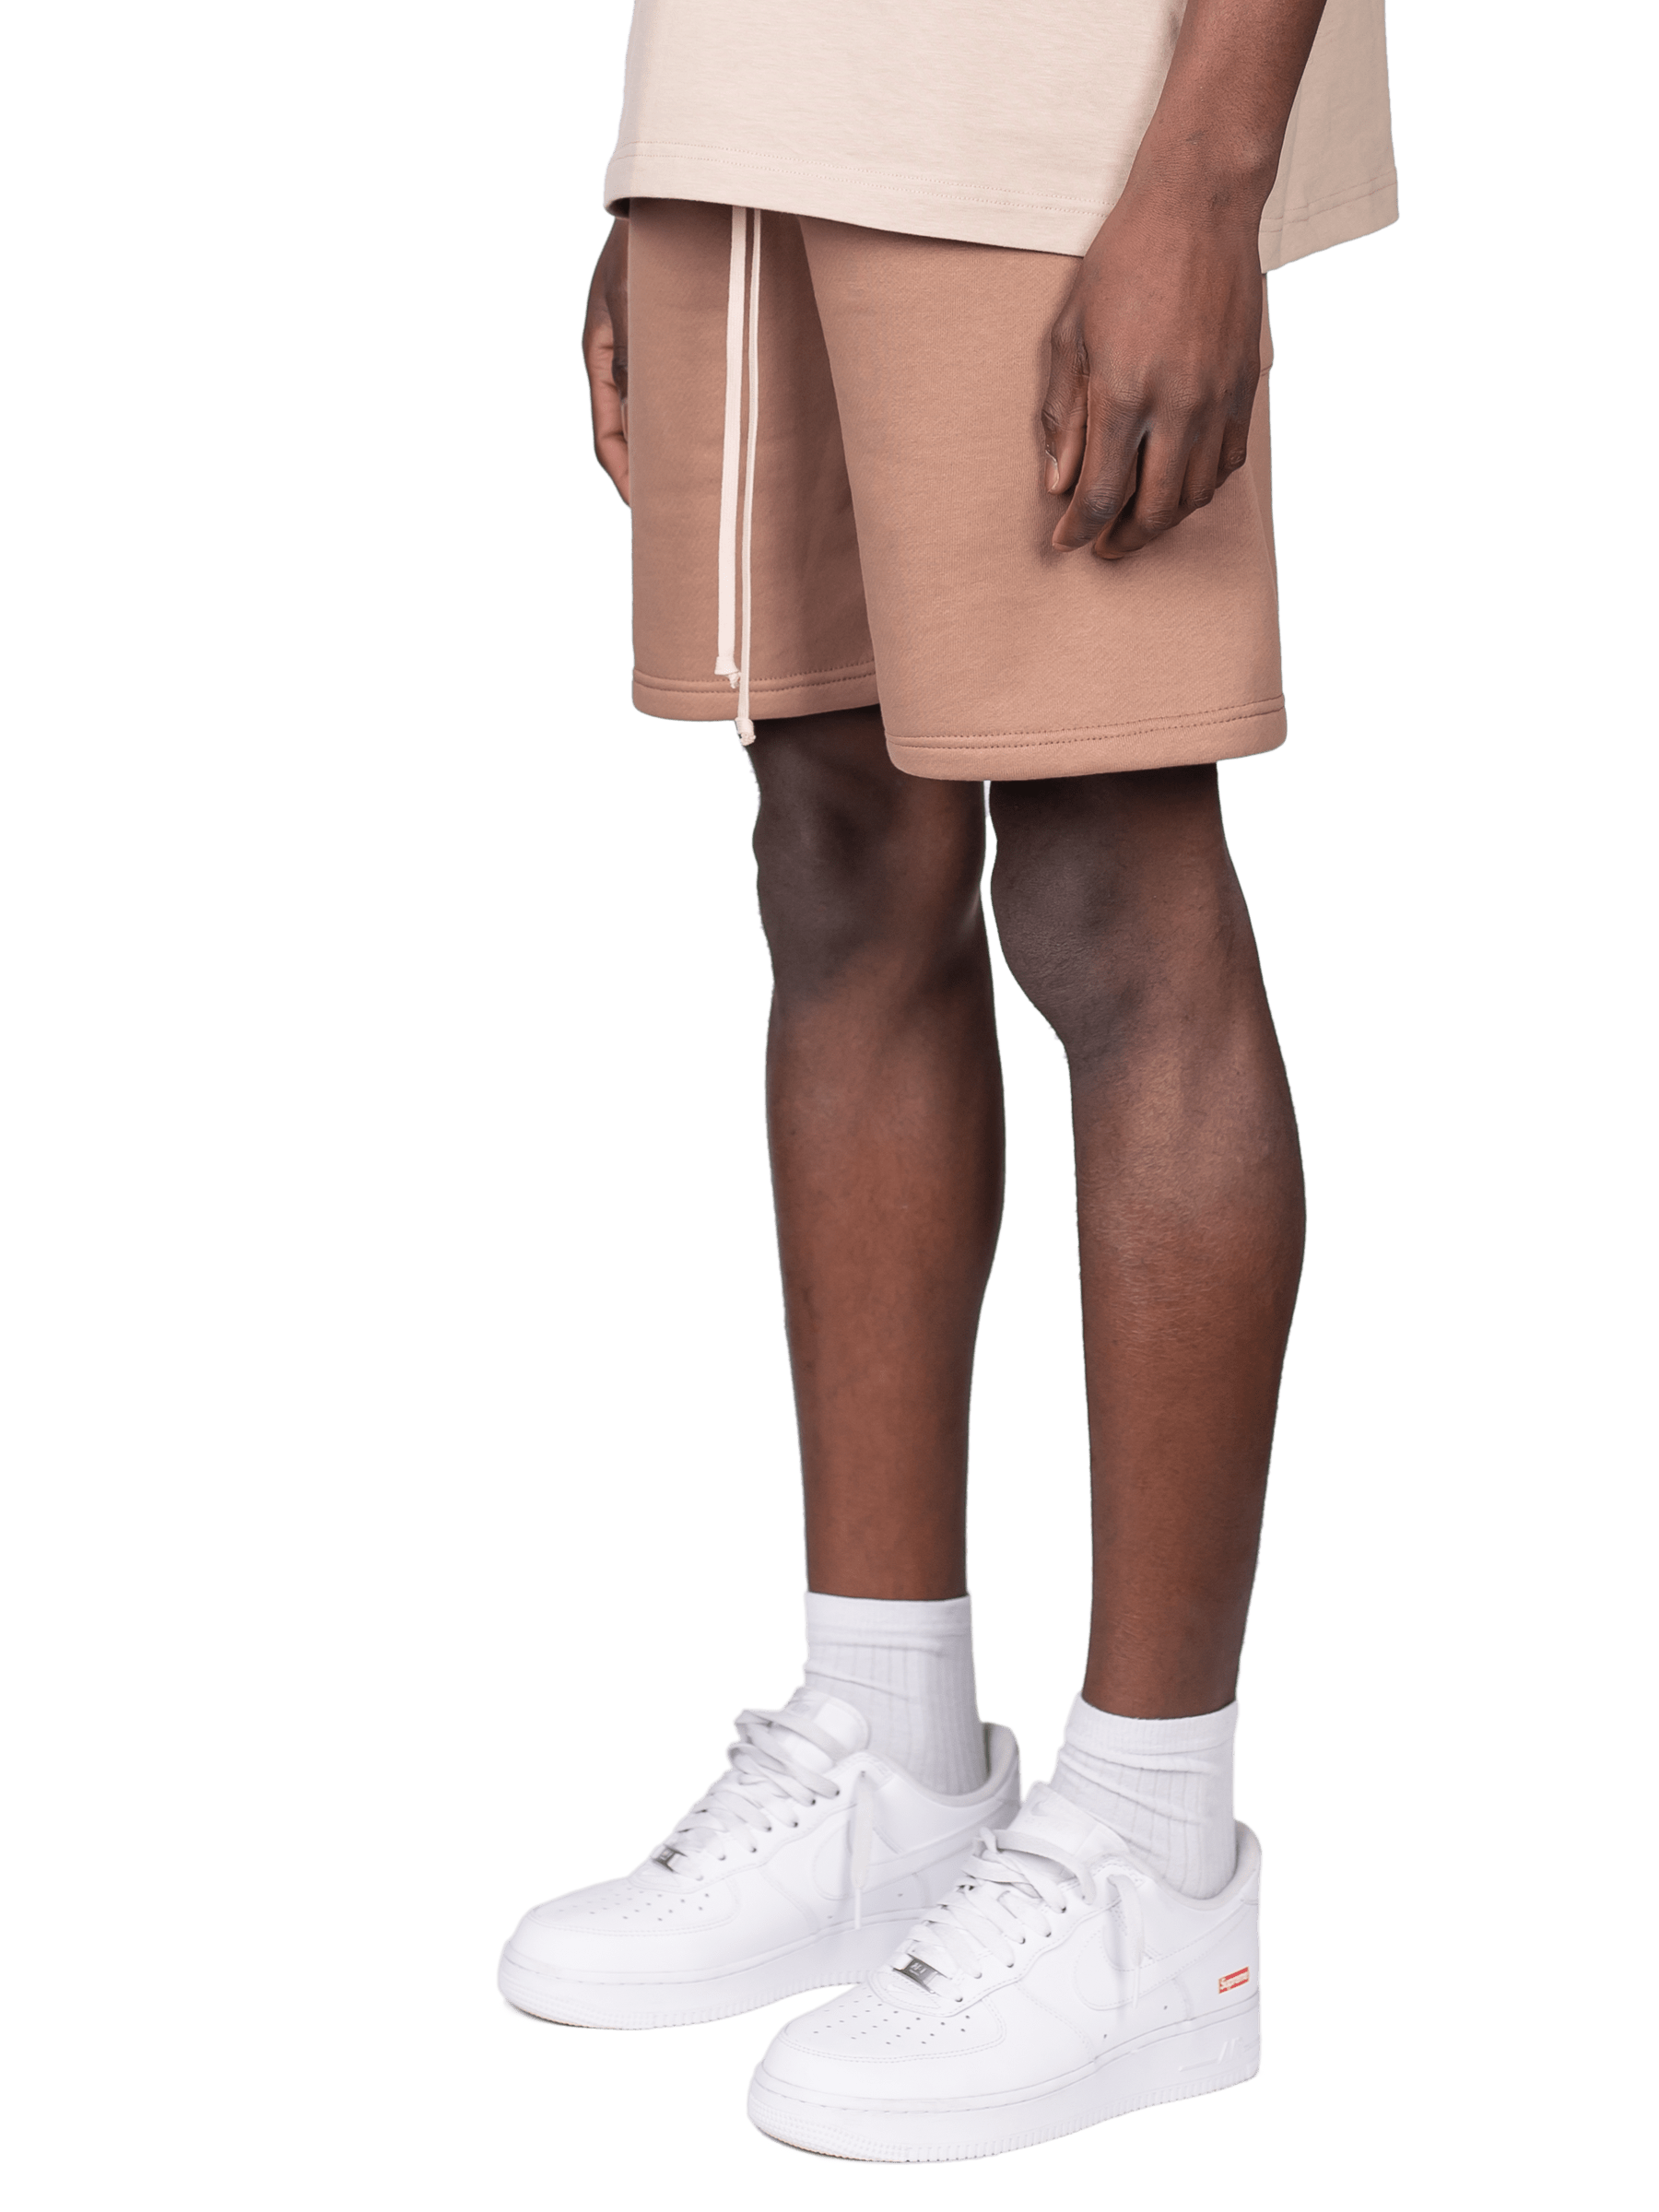 Necessity Shorts - Clay